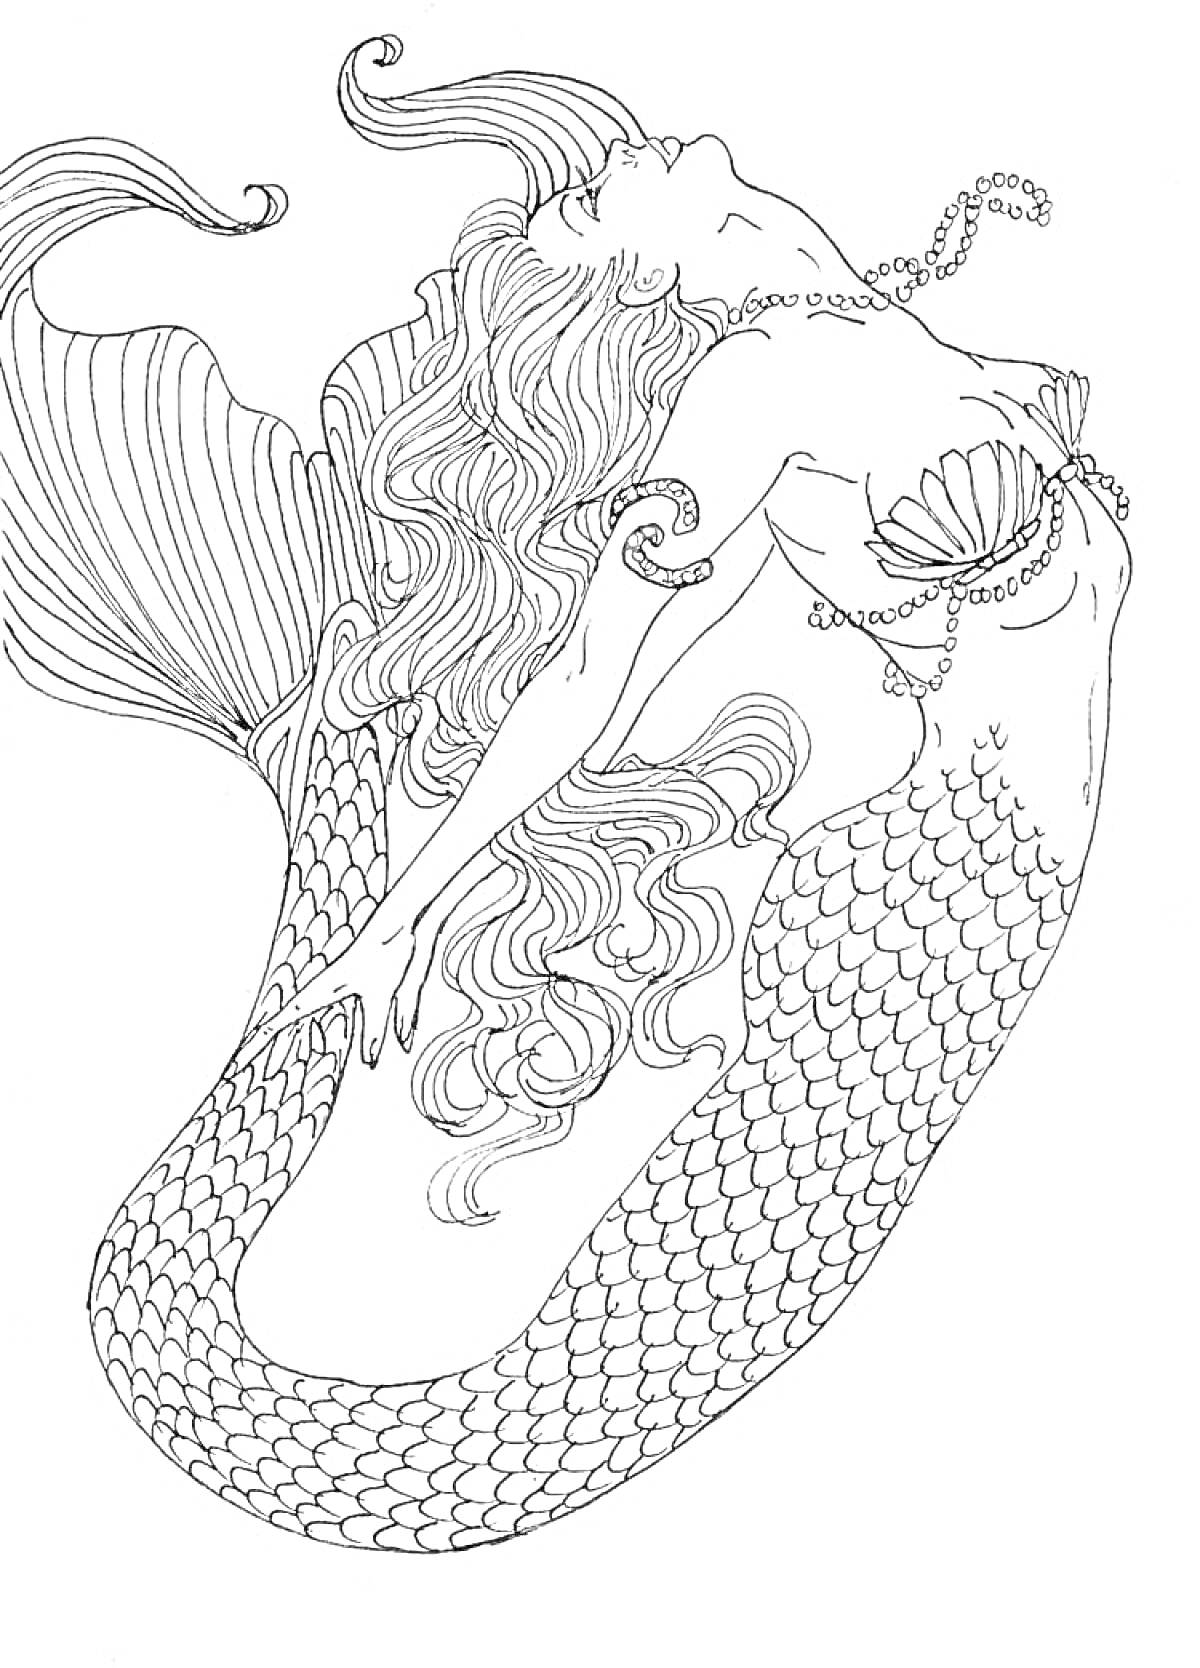 Раскраска Русалка с длинными волосами и чешуйчатым хвостом